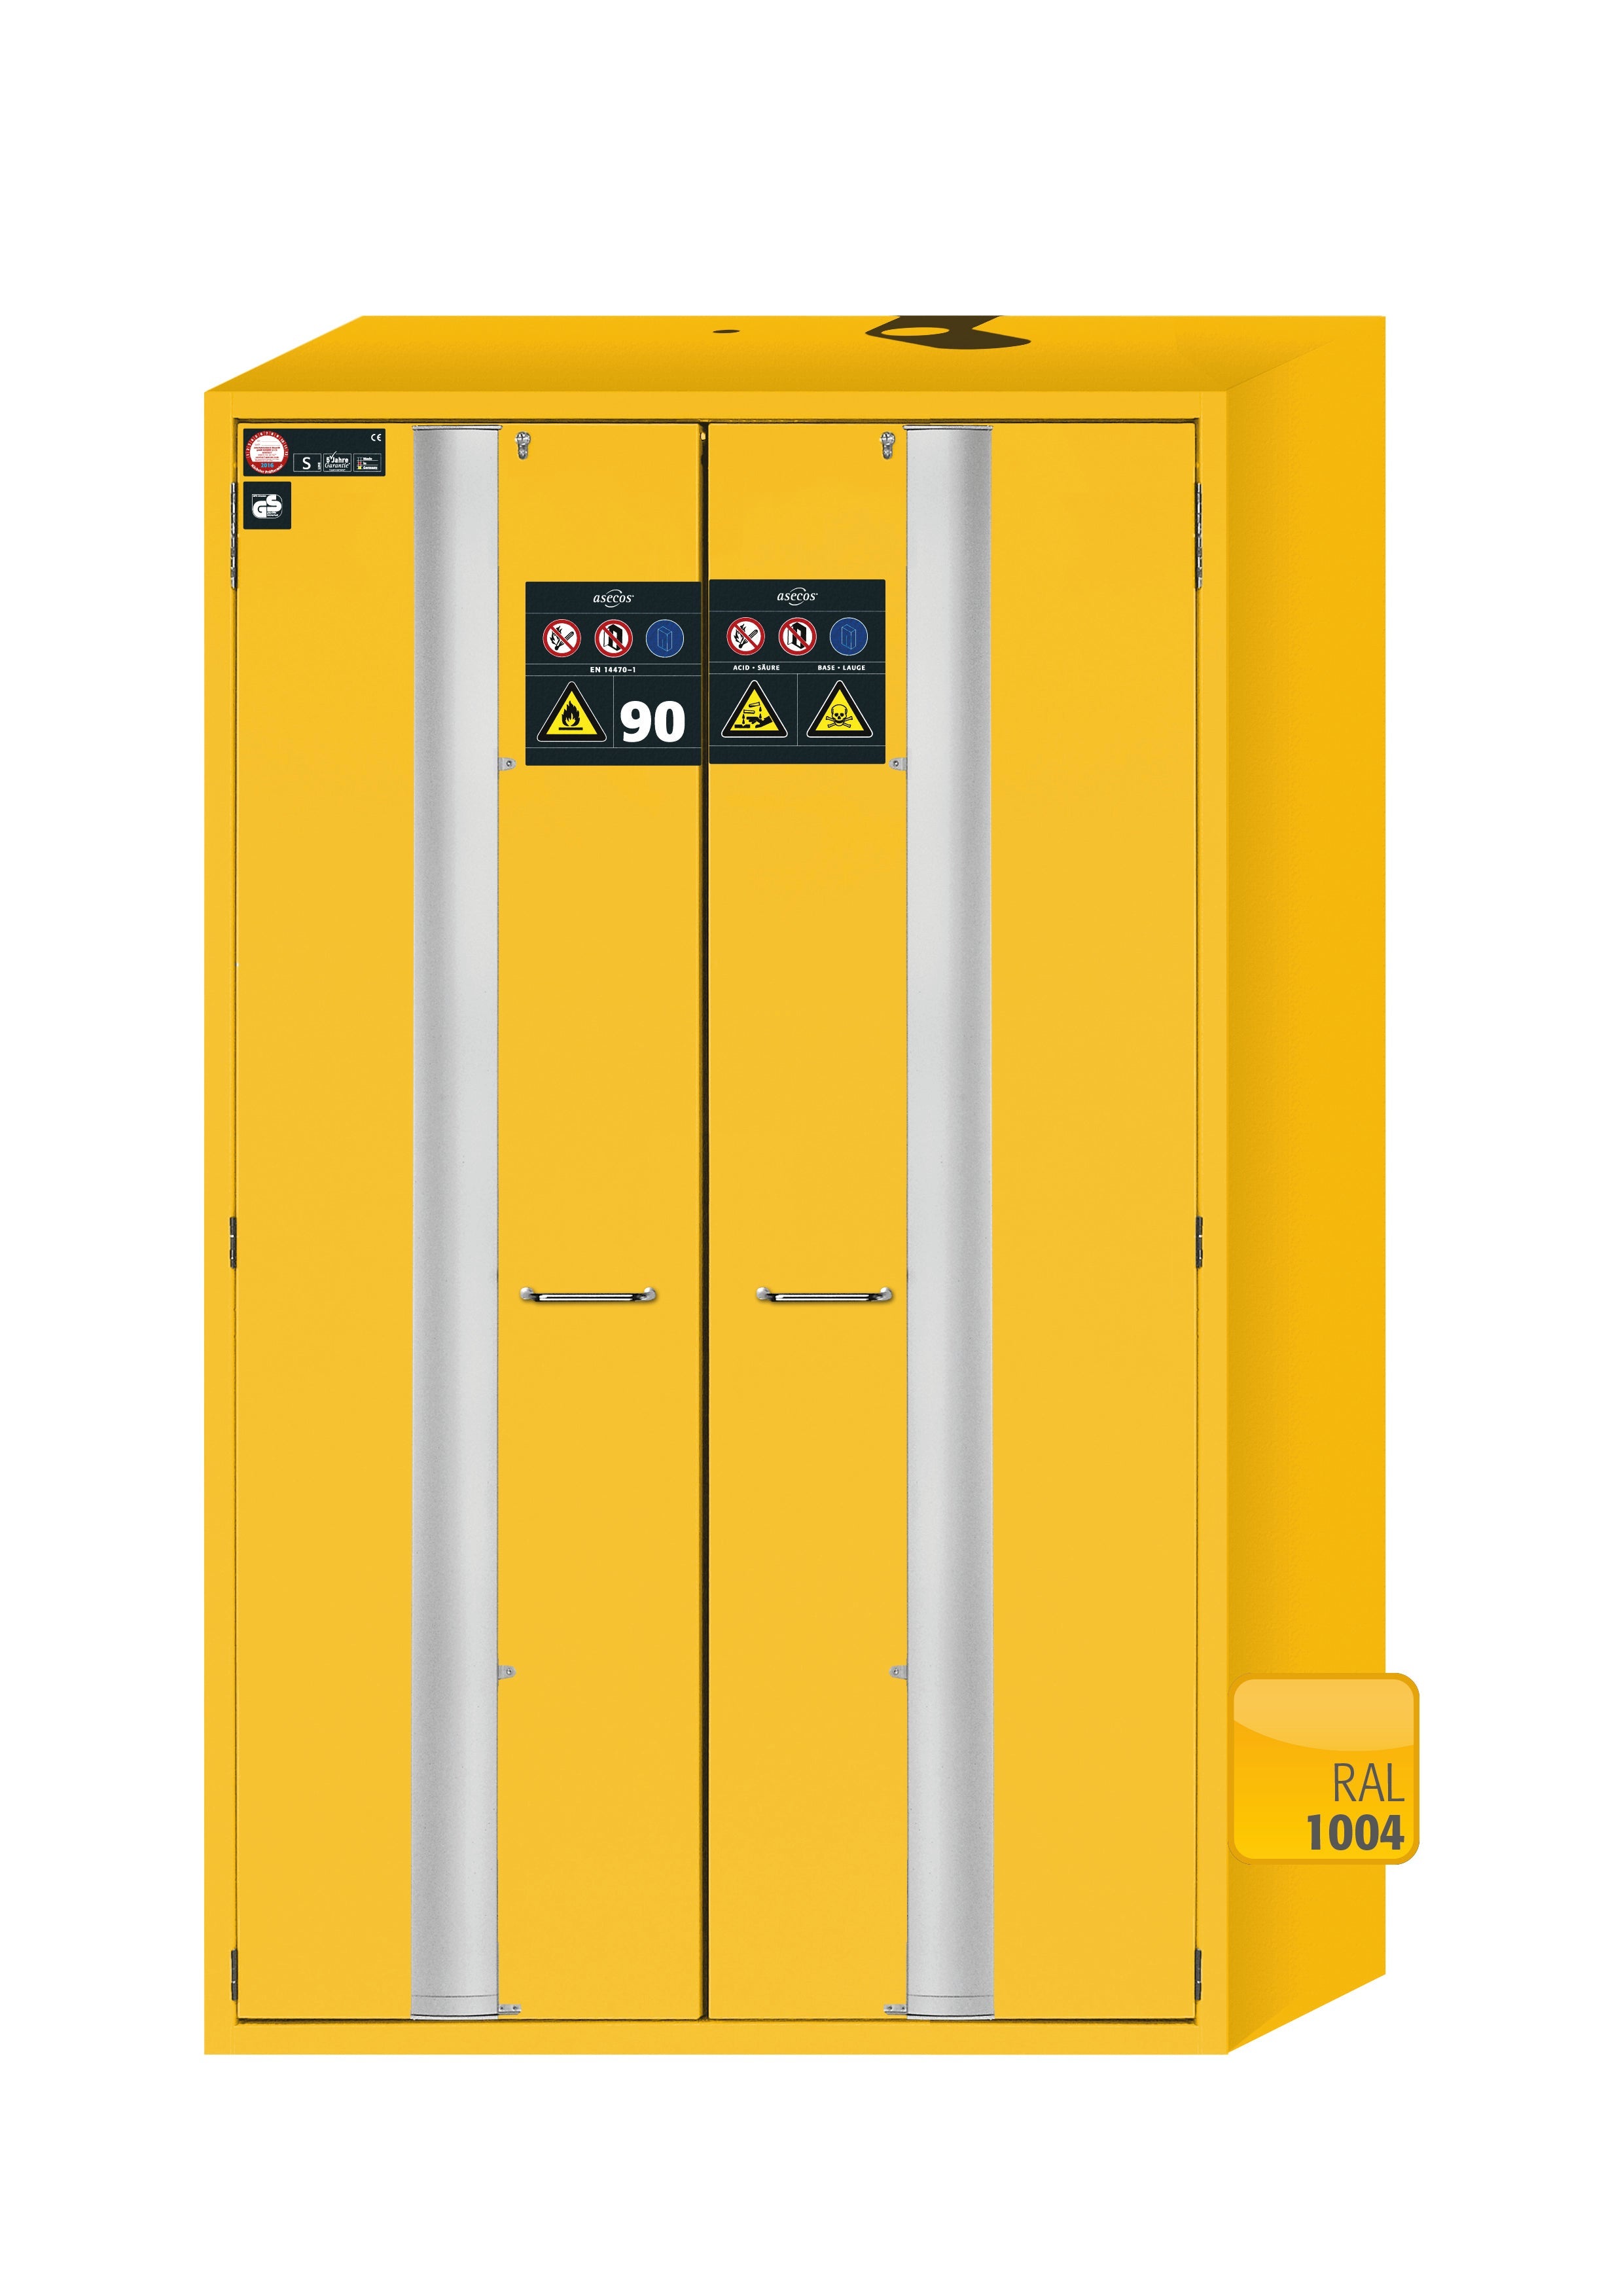 Armoire de sécurité type 90 S-PHOENIX-90 modèle S90.196.120.MV.FDAS en jaune de sécurité RAL 1004 avec 3x étagères standard (acier inoxydable 1.4301)